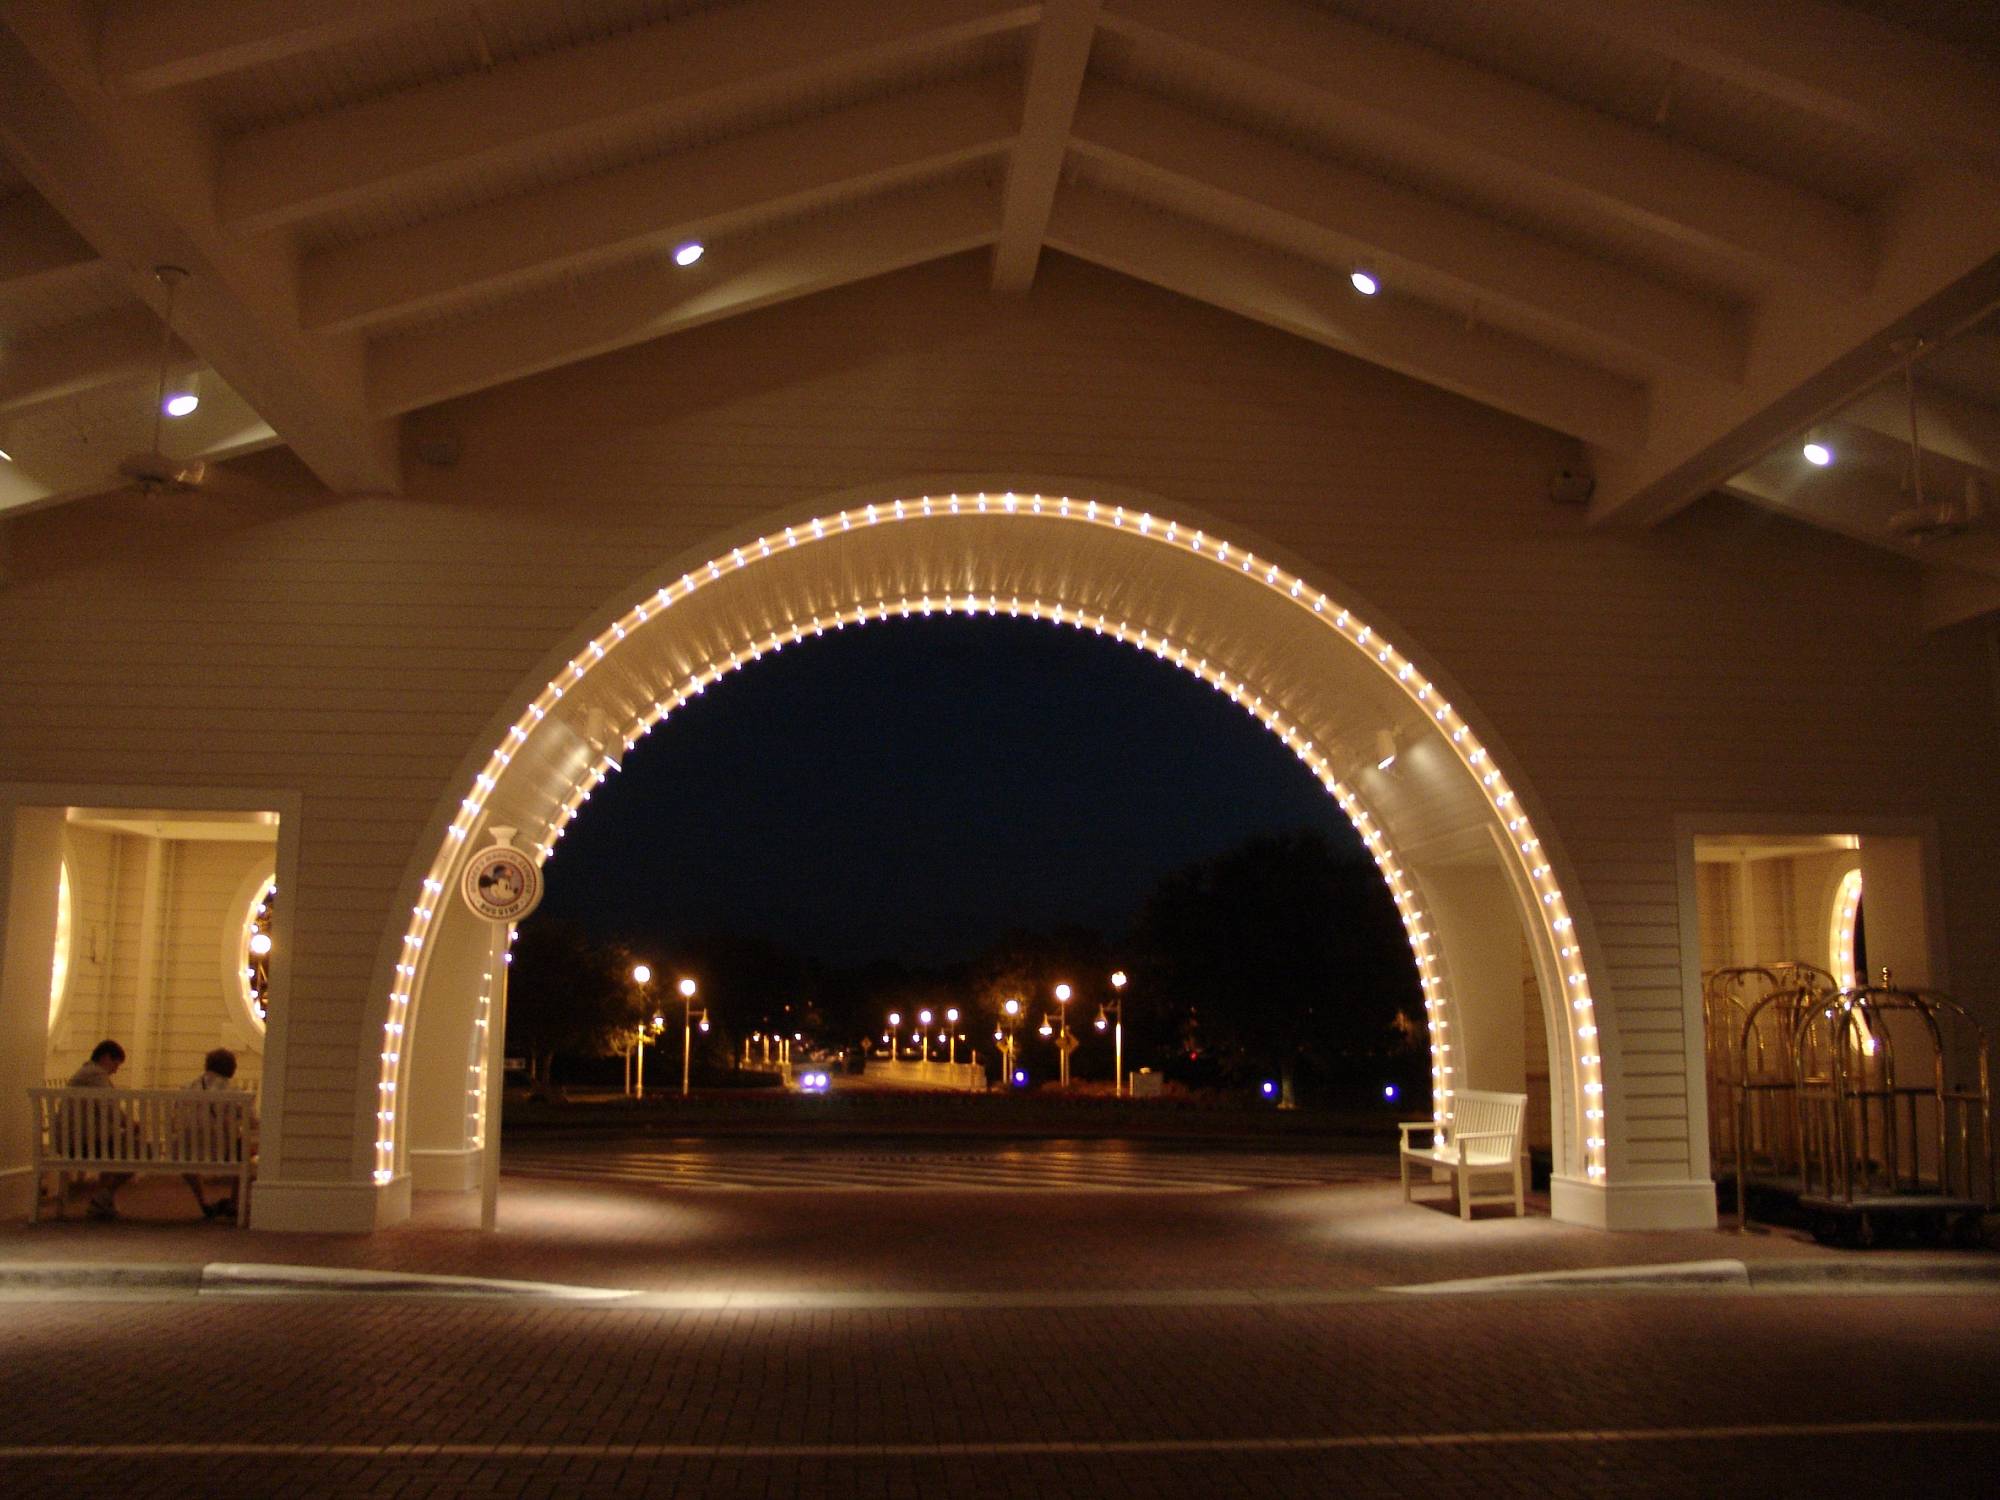 BoardWalk - entrance at night